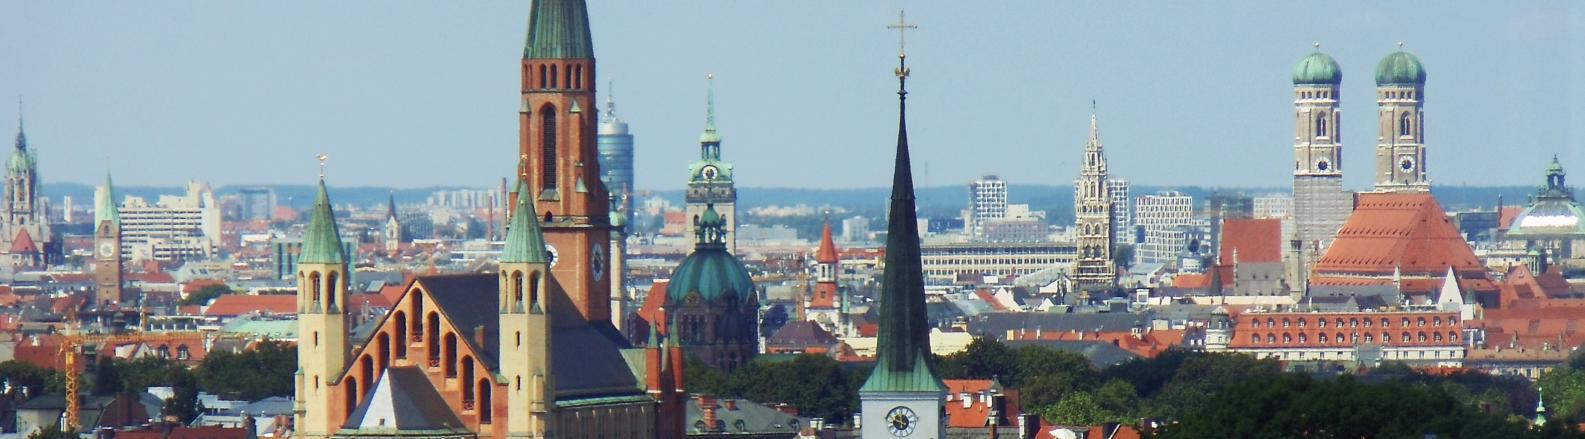 Blick auf München von einem Hochhaus aus